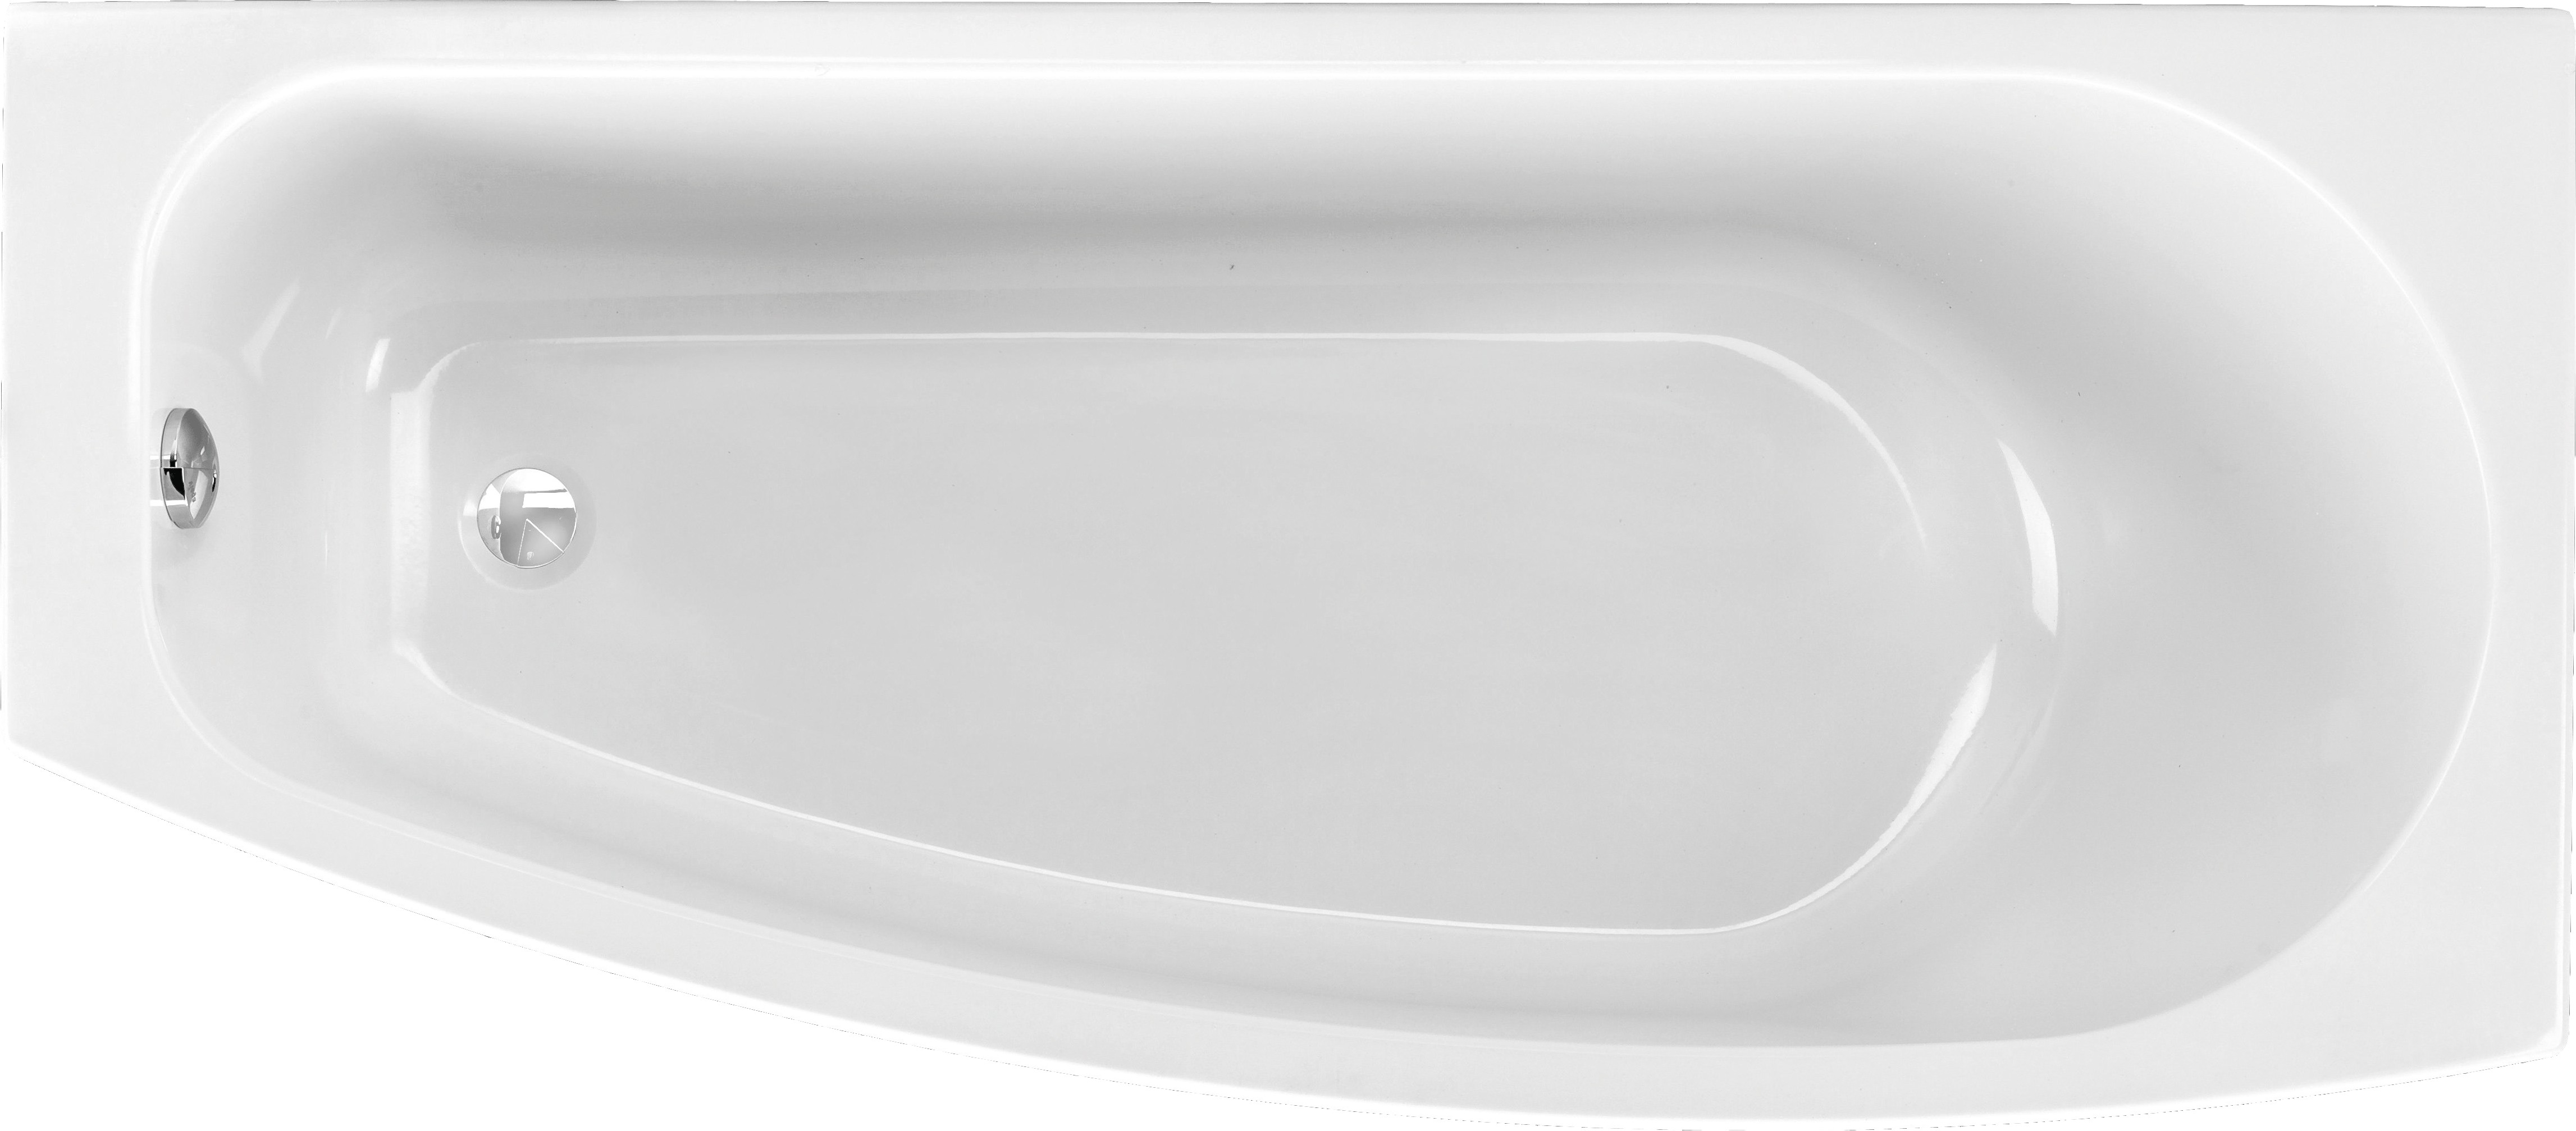 Raumsparwanne Isabela 169 x 74 x 43 cm rechts weiß (ehemals Compact)